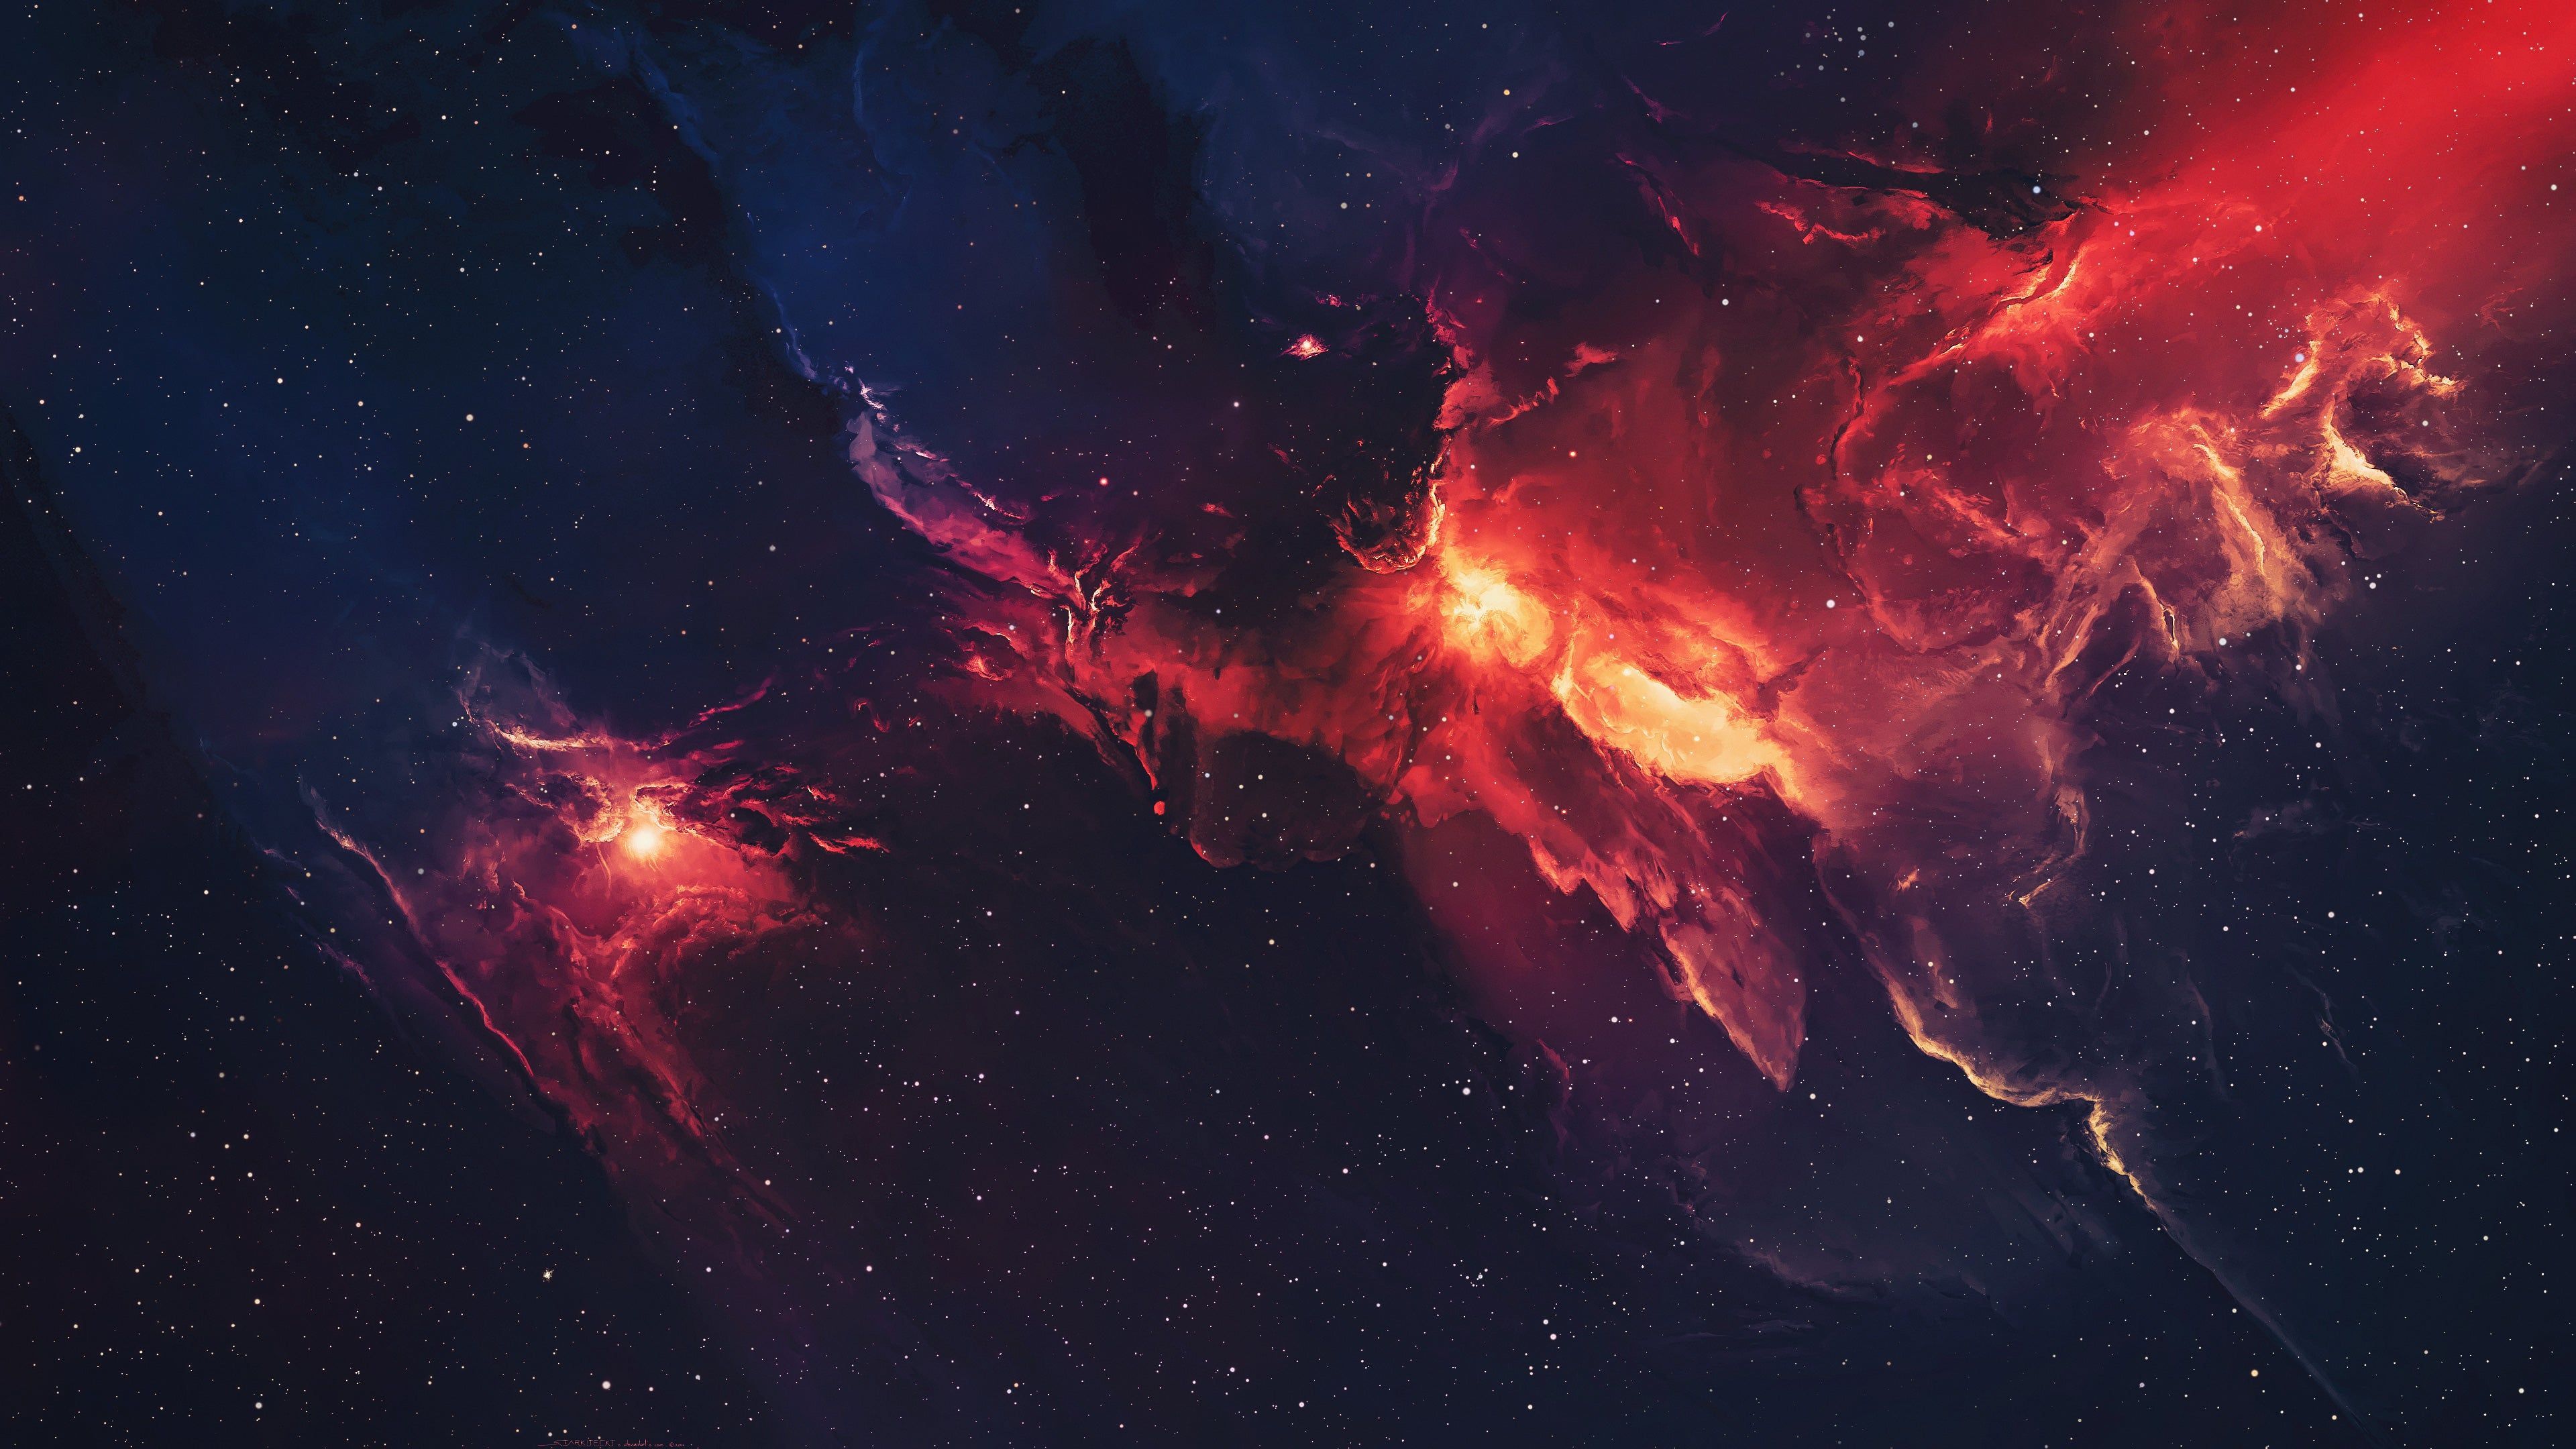 Red and Blue Nebula 4K wallpaper. Nebula wallpaper, Star wallpaper, Nebula